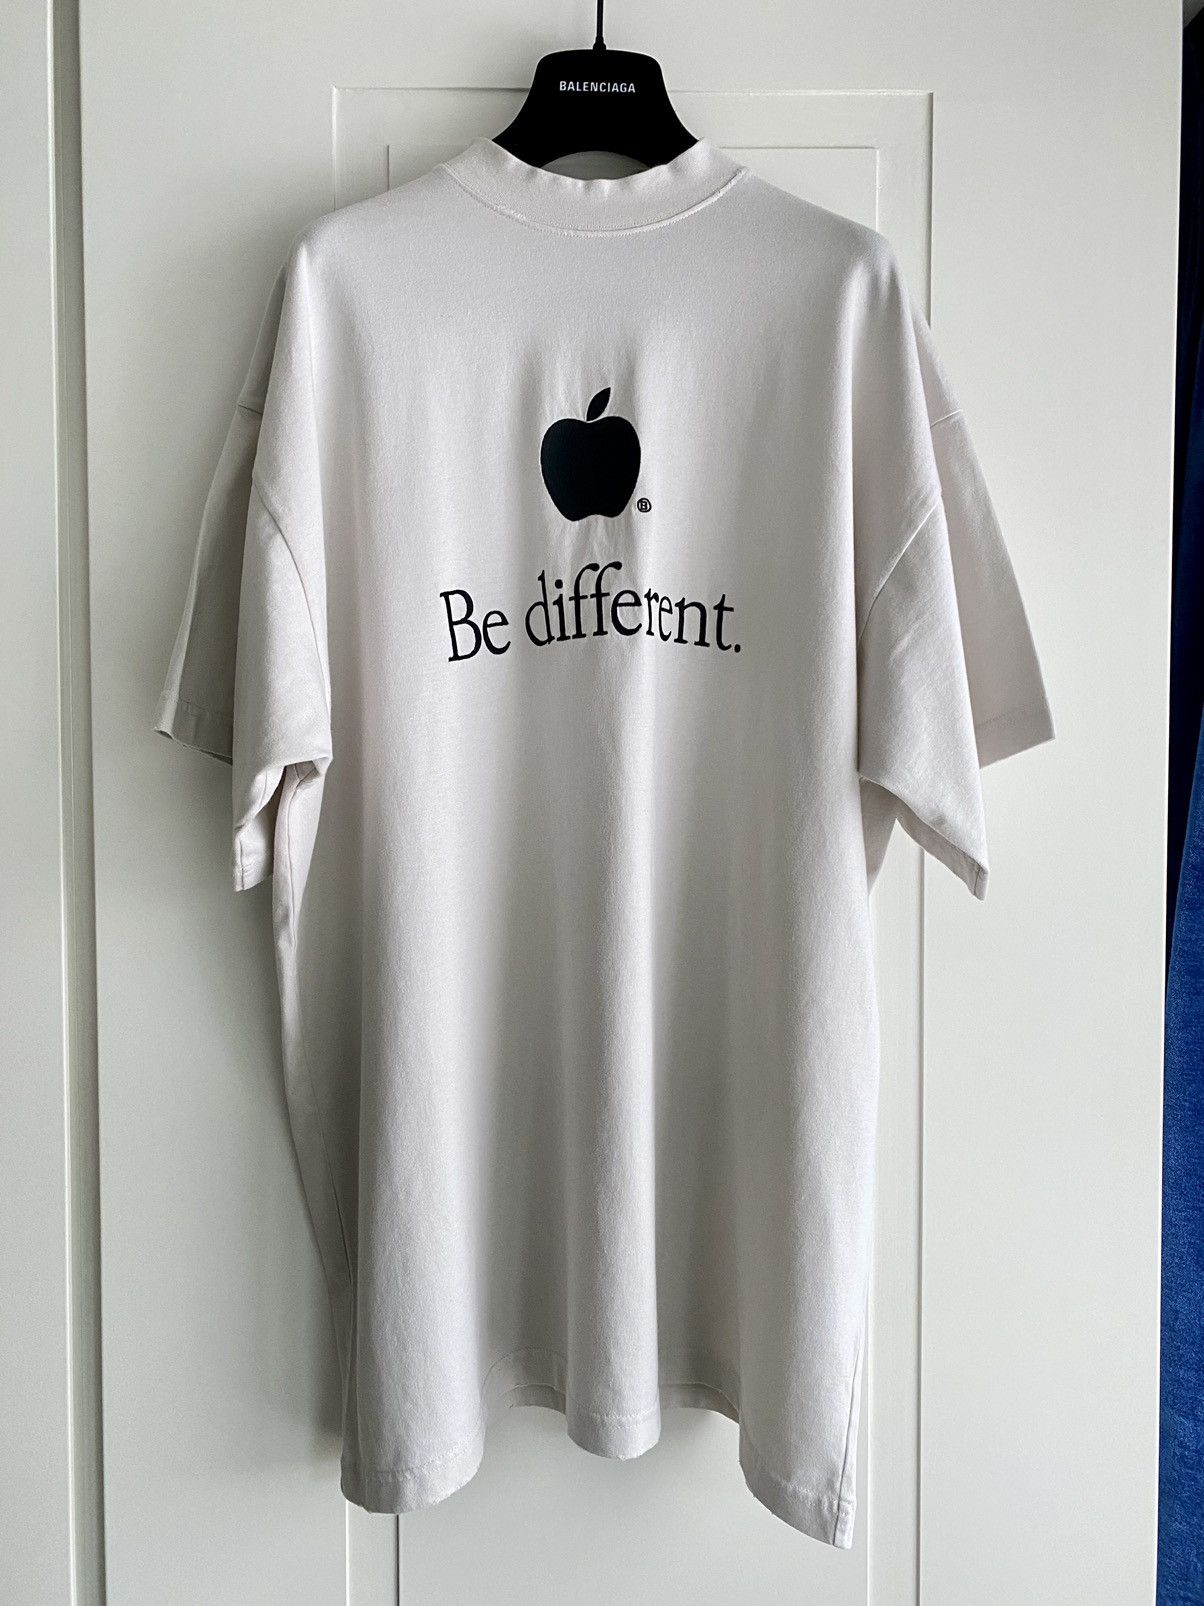 Balenciaga RARE Balenciaga - Apple - Be different - embroidered T